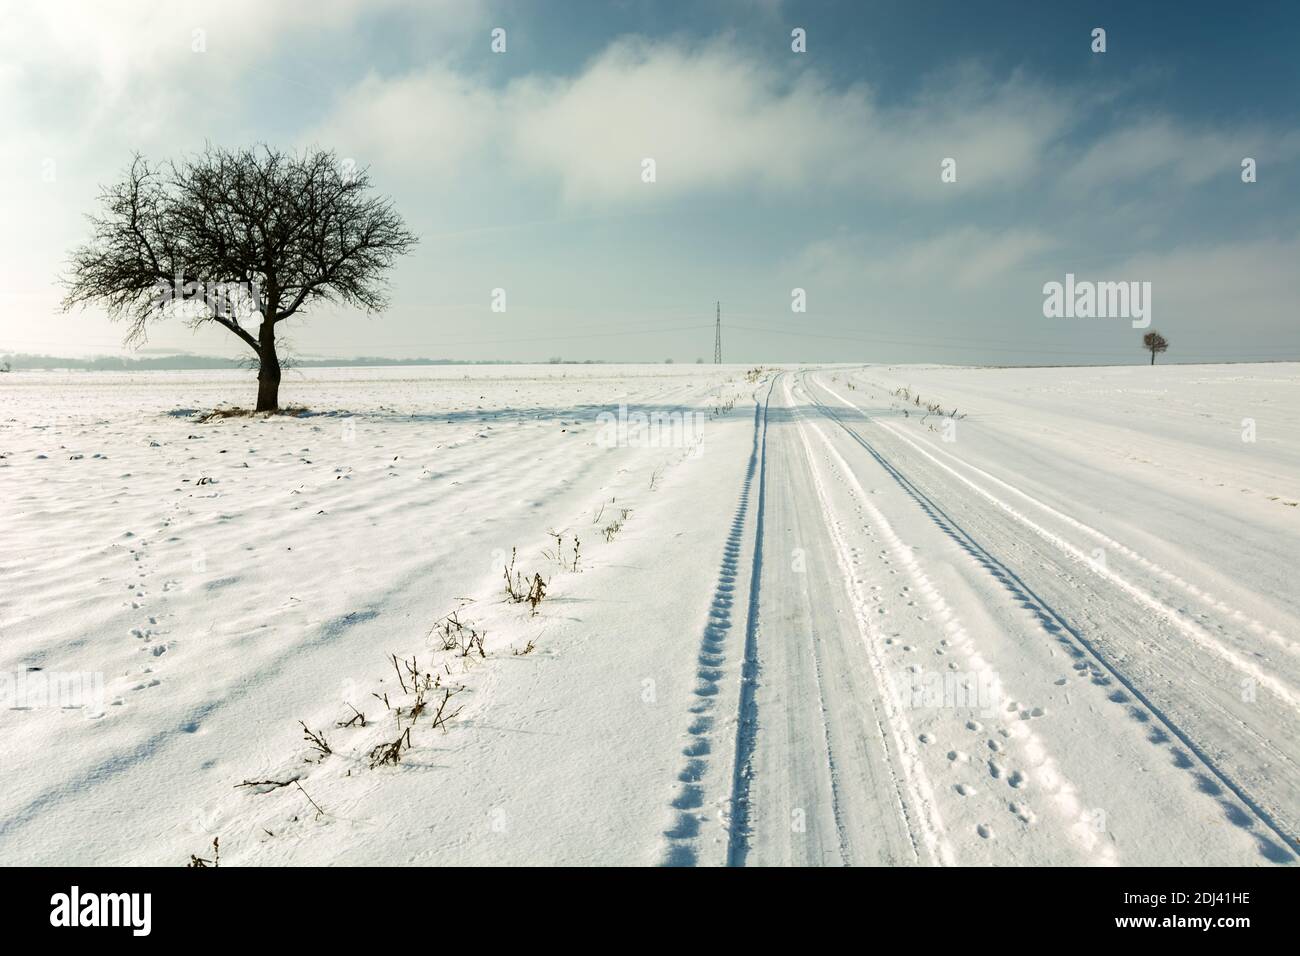 Route enneigée et un arbre solitaire à l'horizon, vue d'hiver Banque D'Images